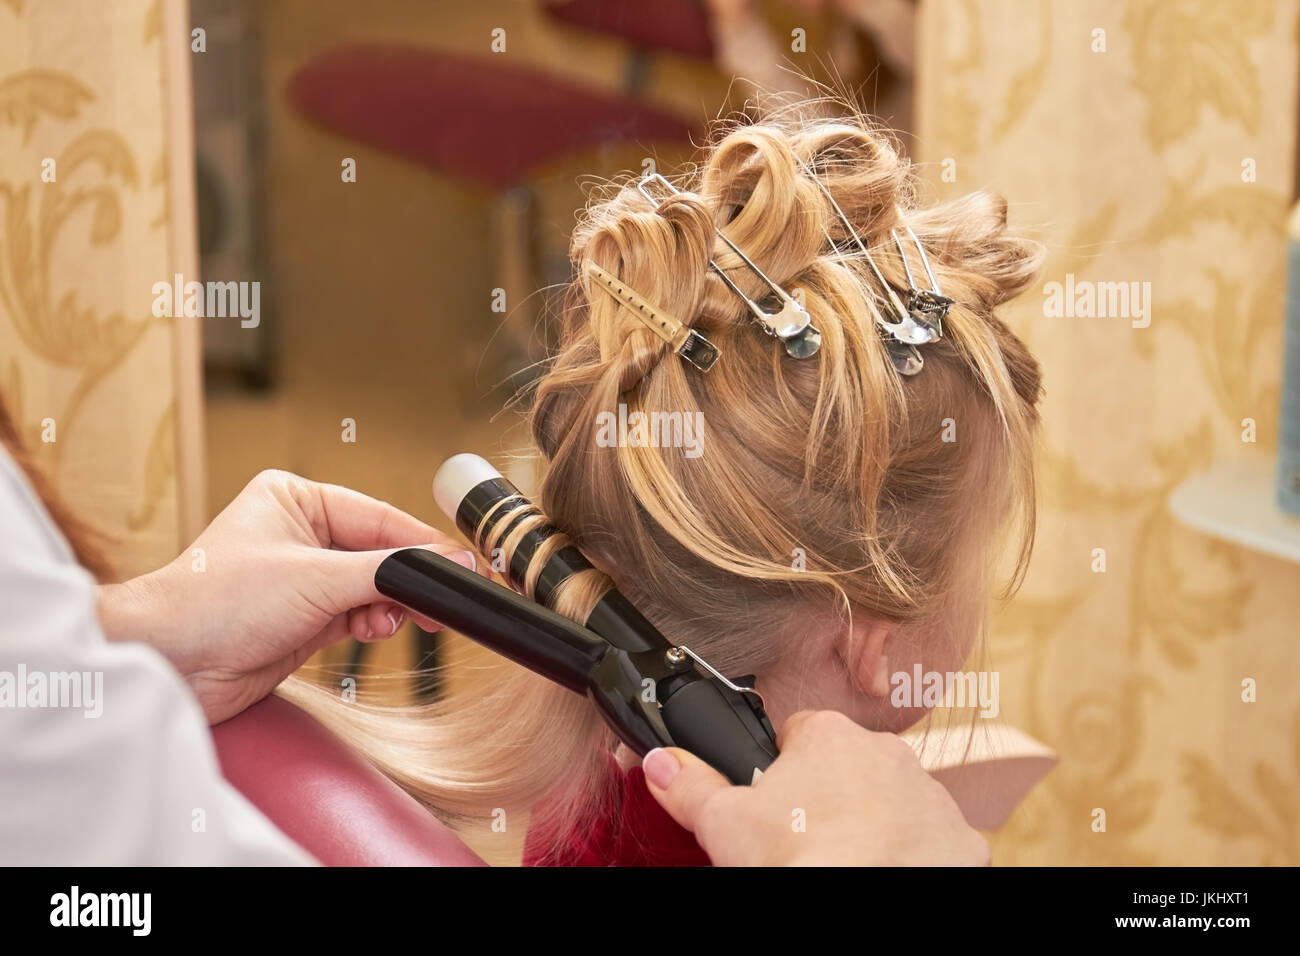 Hairdo of little girl. Stock Photo